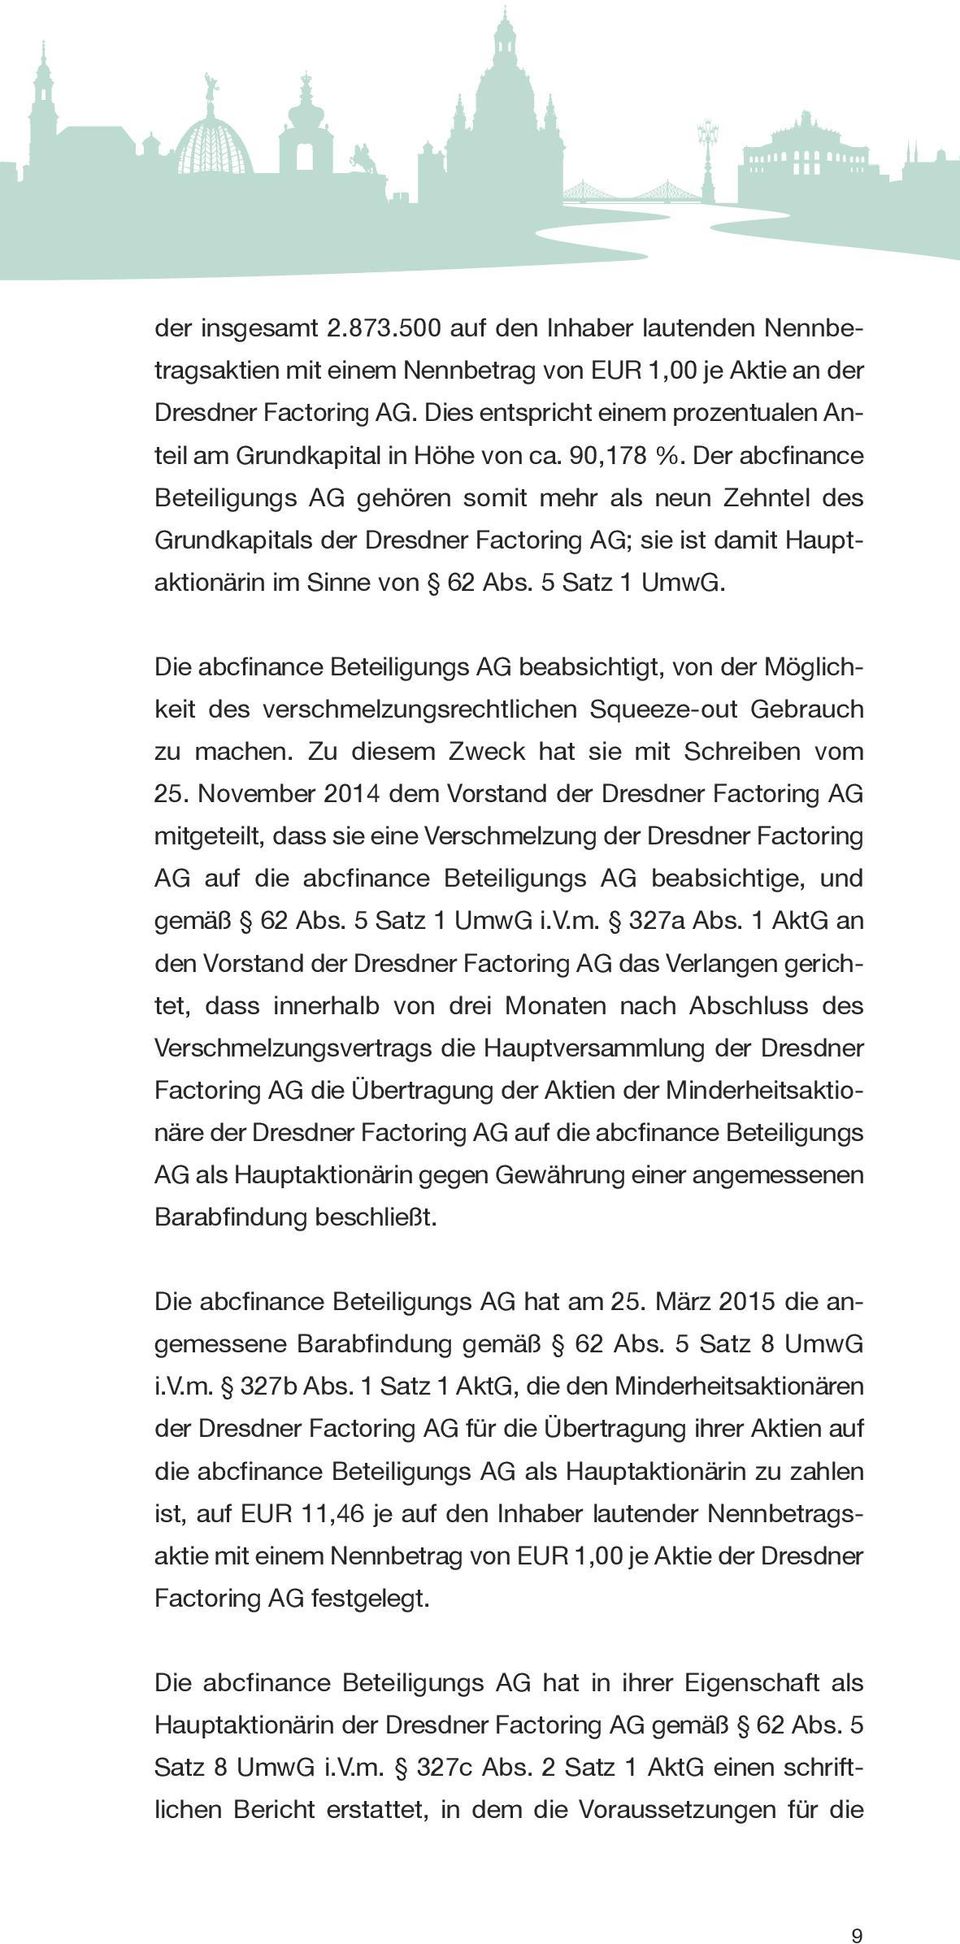 Der abcfinance Beteiligungs AG gehören somit mehr als neun Zehntel des Grundkapitals der Dresdner Factoring AG; sie ist damit Hauptaktionärin im Sinne von 62 Abs. 5 Satz 1 UmwG.